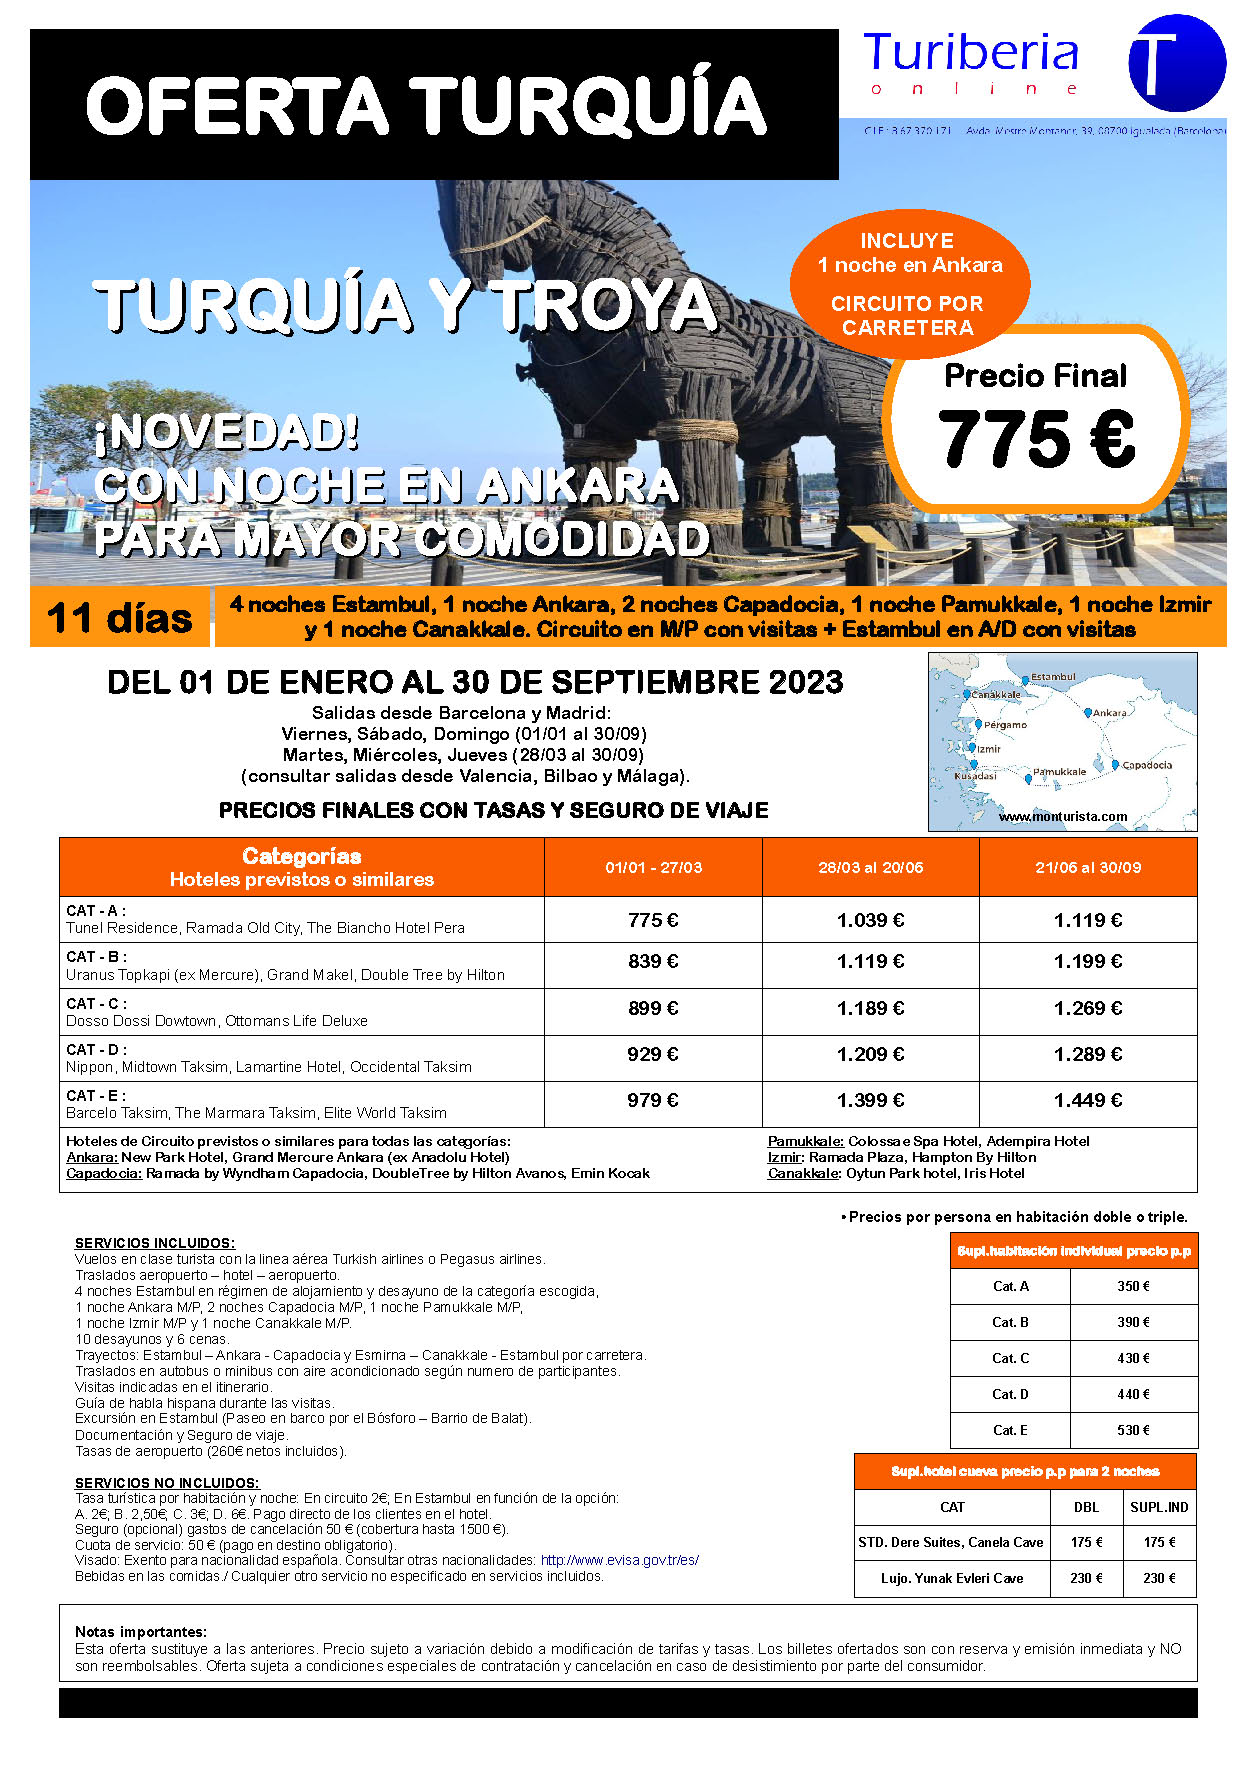 Ofertas Mon Turista 2023 Turquia y Troya 11 dias salida en vuelo regular directo desde Madrid Barcelona Bilbao Valencia y Malaga